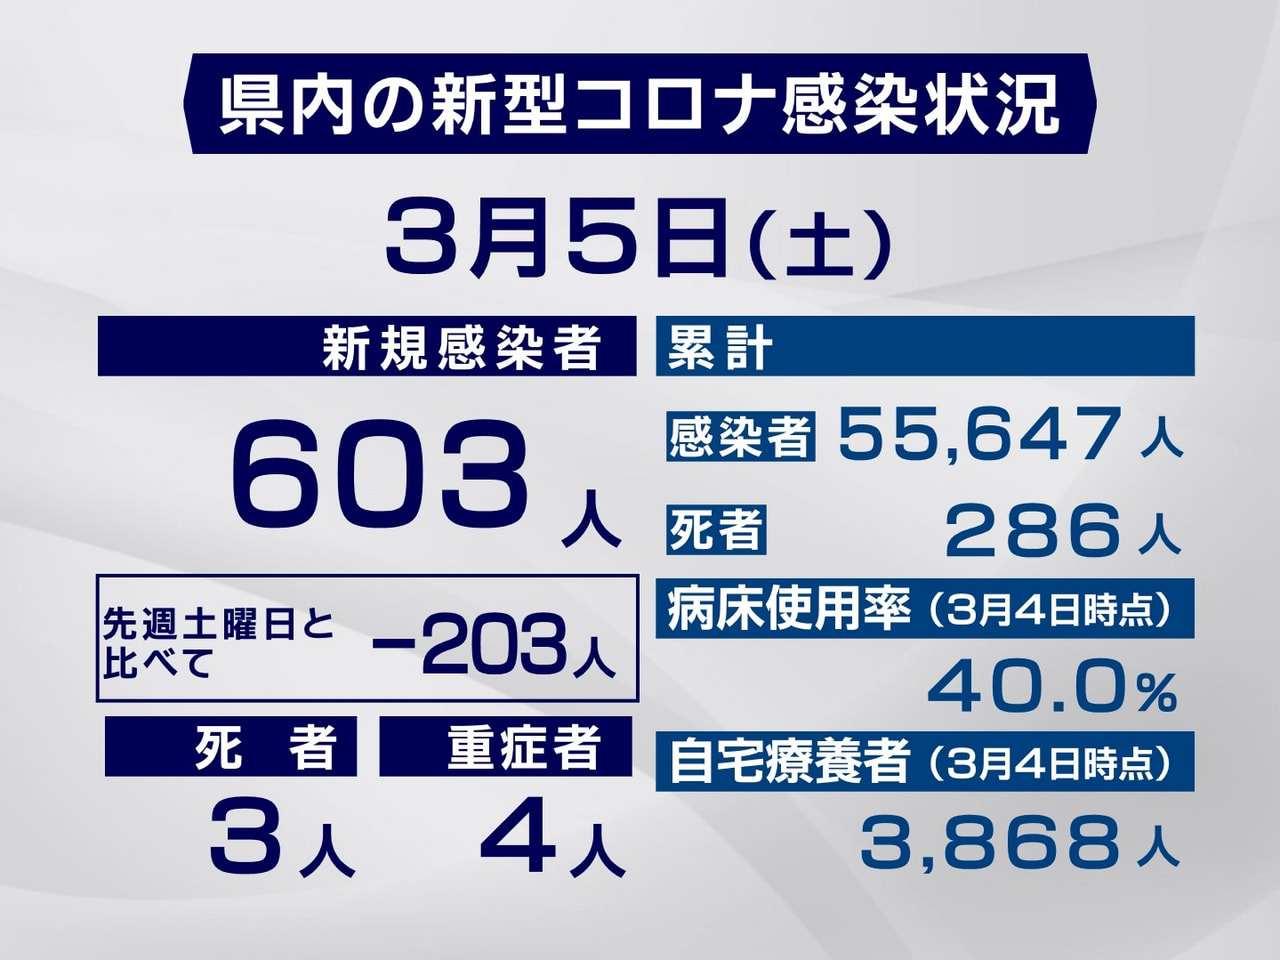 岐阜県は５日、新型コロナウイルスの感染者が新たに６０３人、また３人の死亡が確認さ...